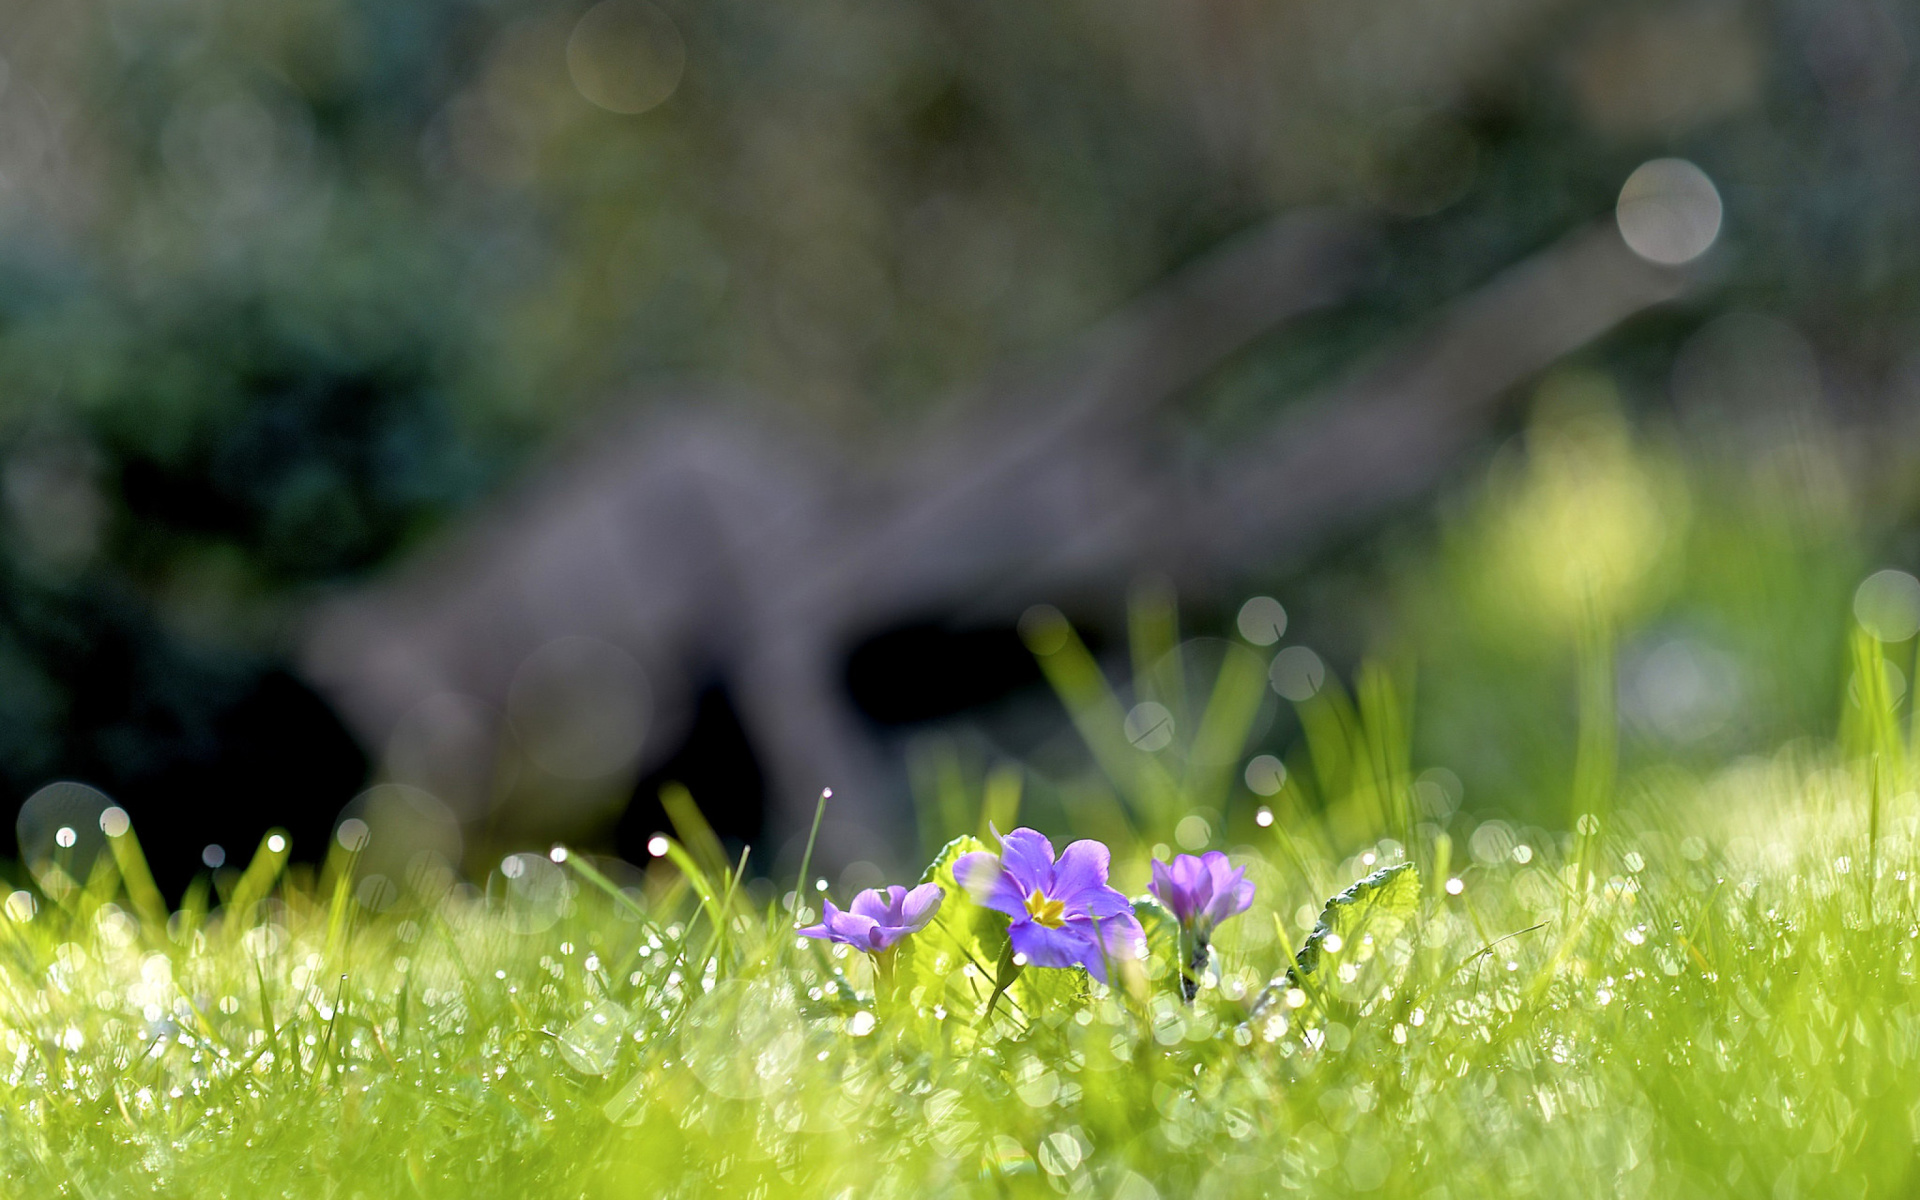 Обои Grass and lilac flower 1920x1200